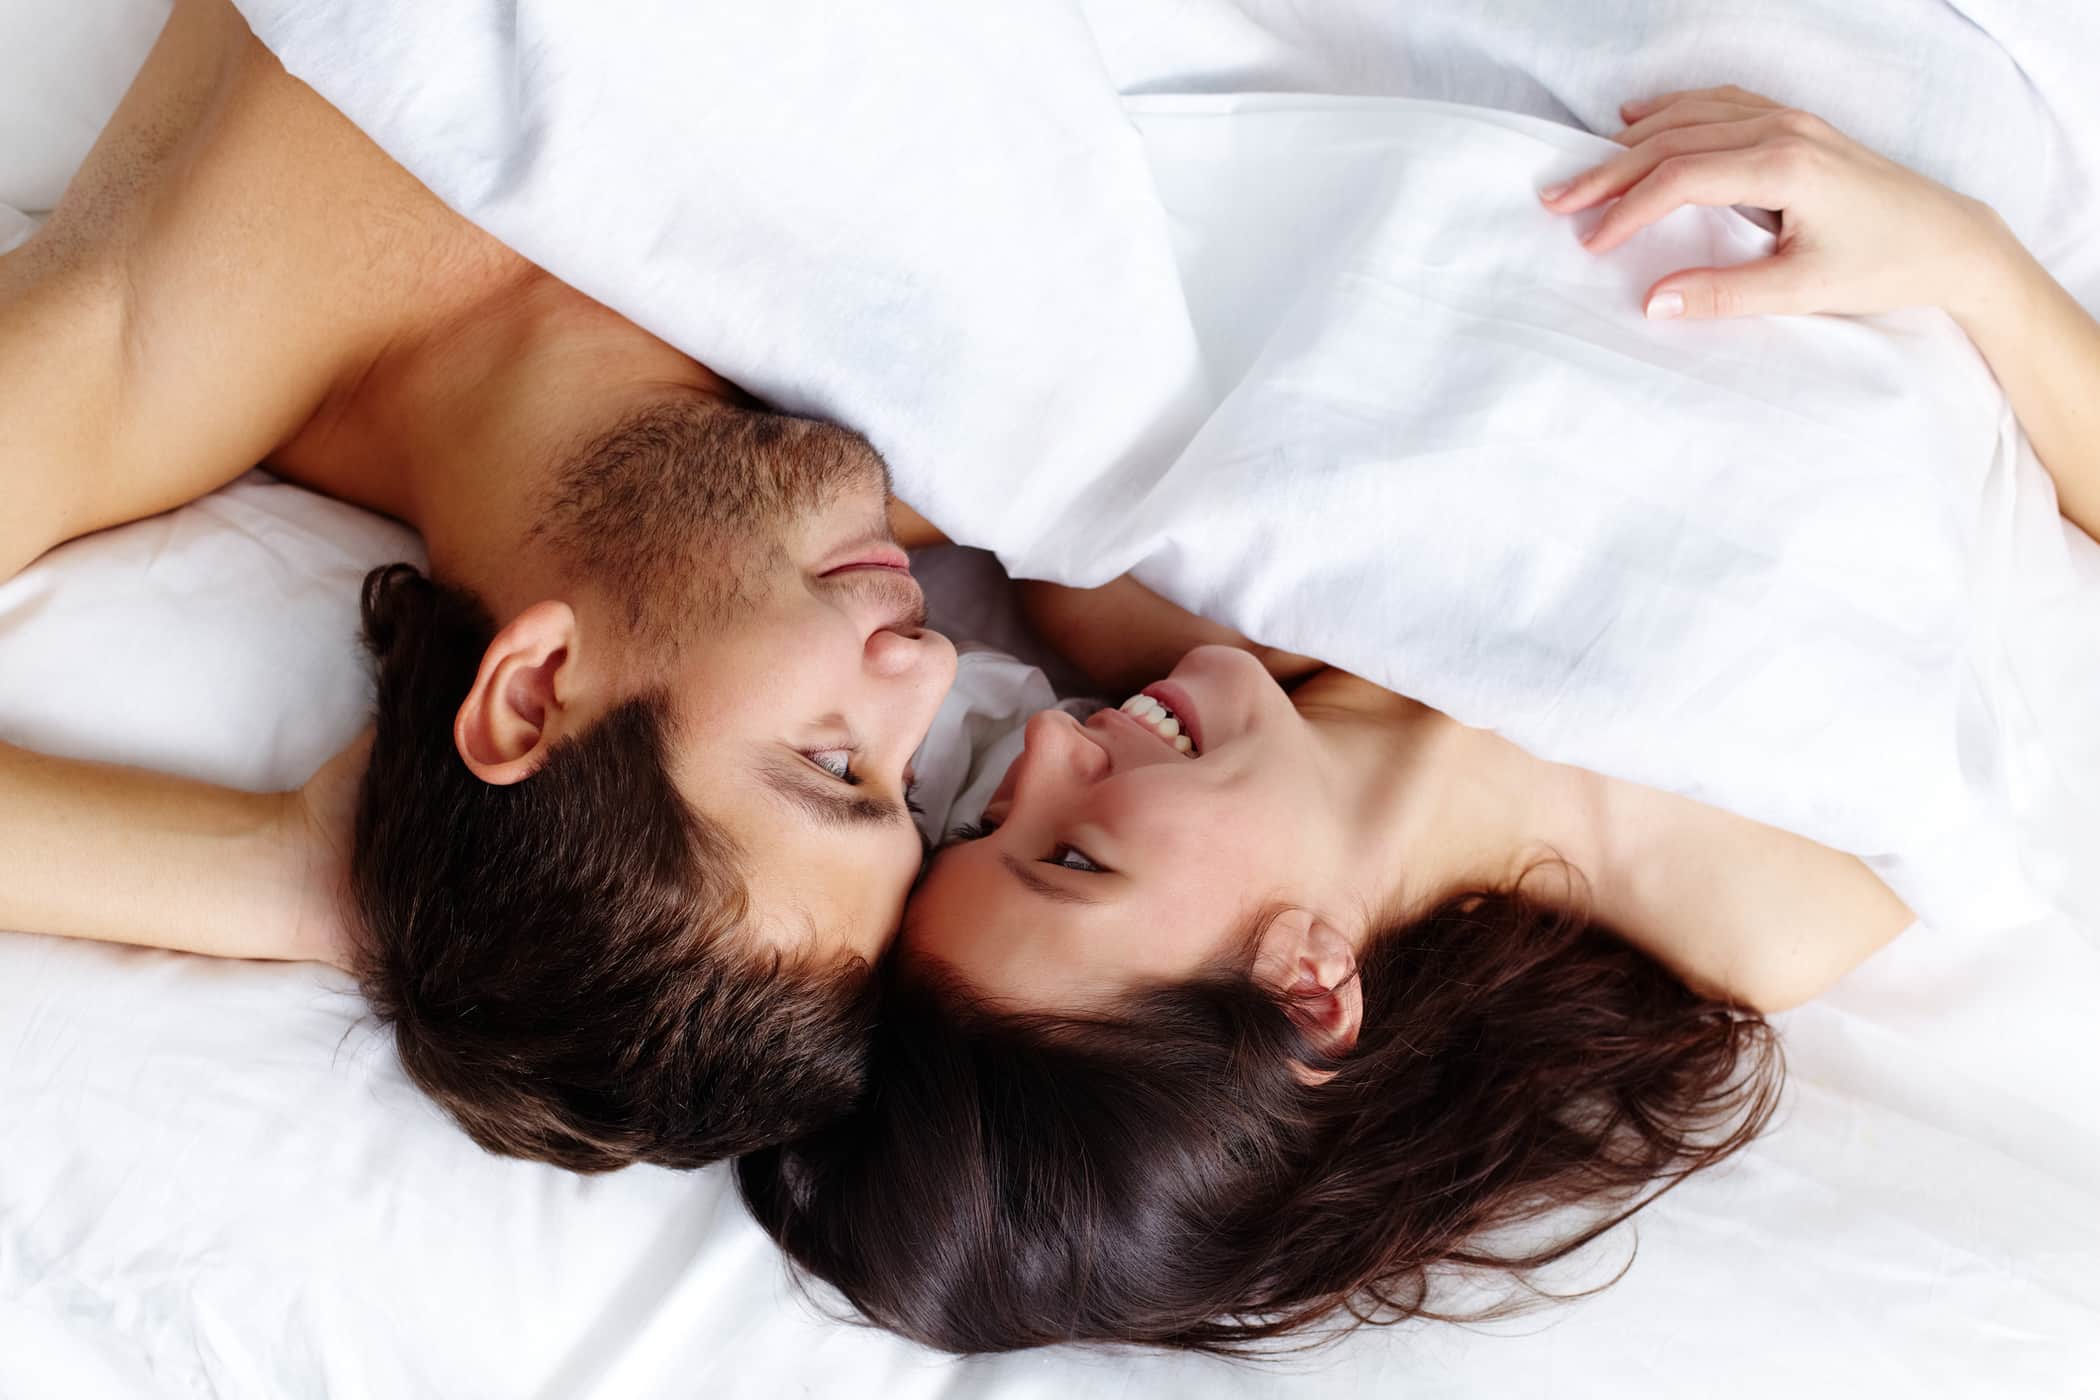 4 iznenađujuće stvari koje bi mogle biti izvor vašeg seksualnog zadovoljstva